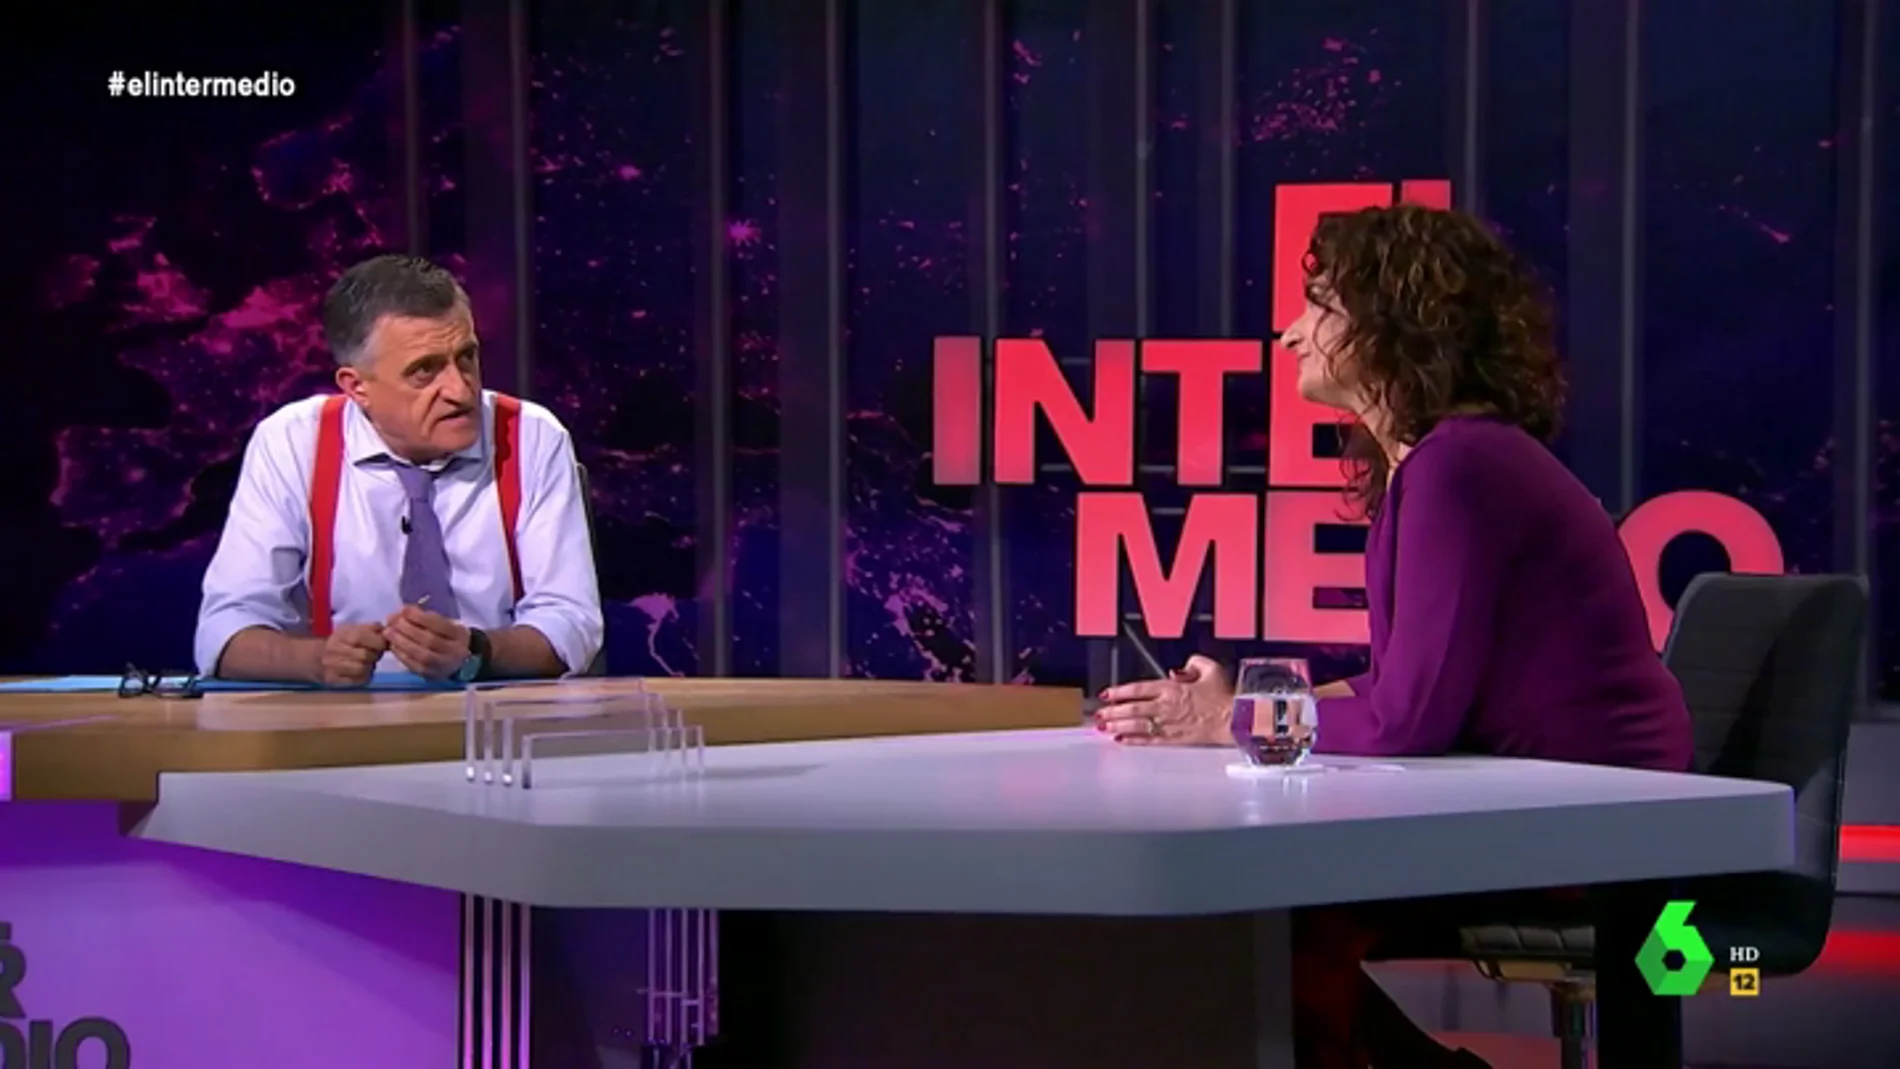 La entrevista completa de la ministra Montero en El Intermedio: "No sé en qué momento Ciudadanos empezó a pensar que el PSOE es el enemigo a batir"